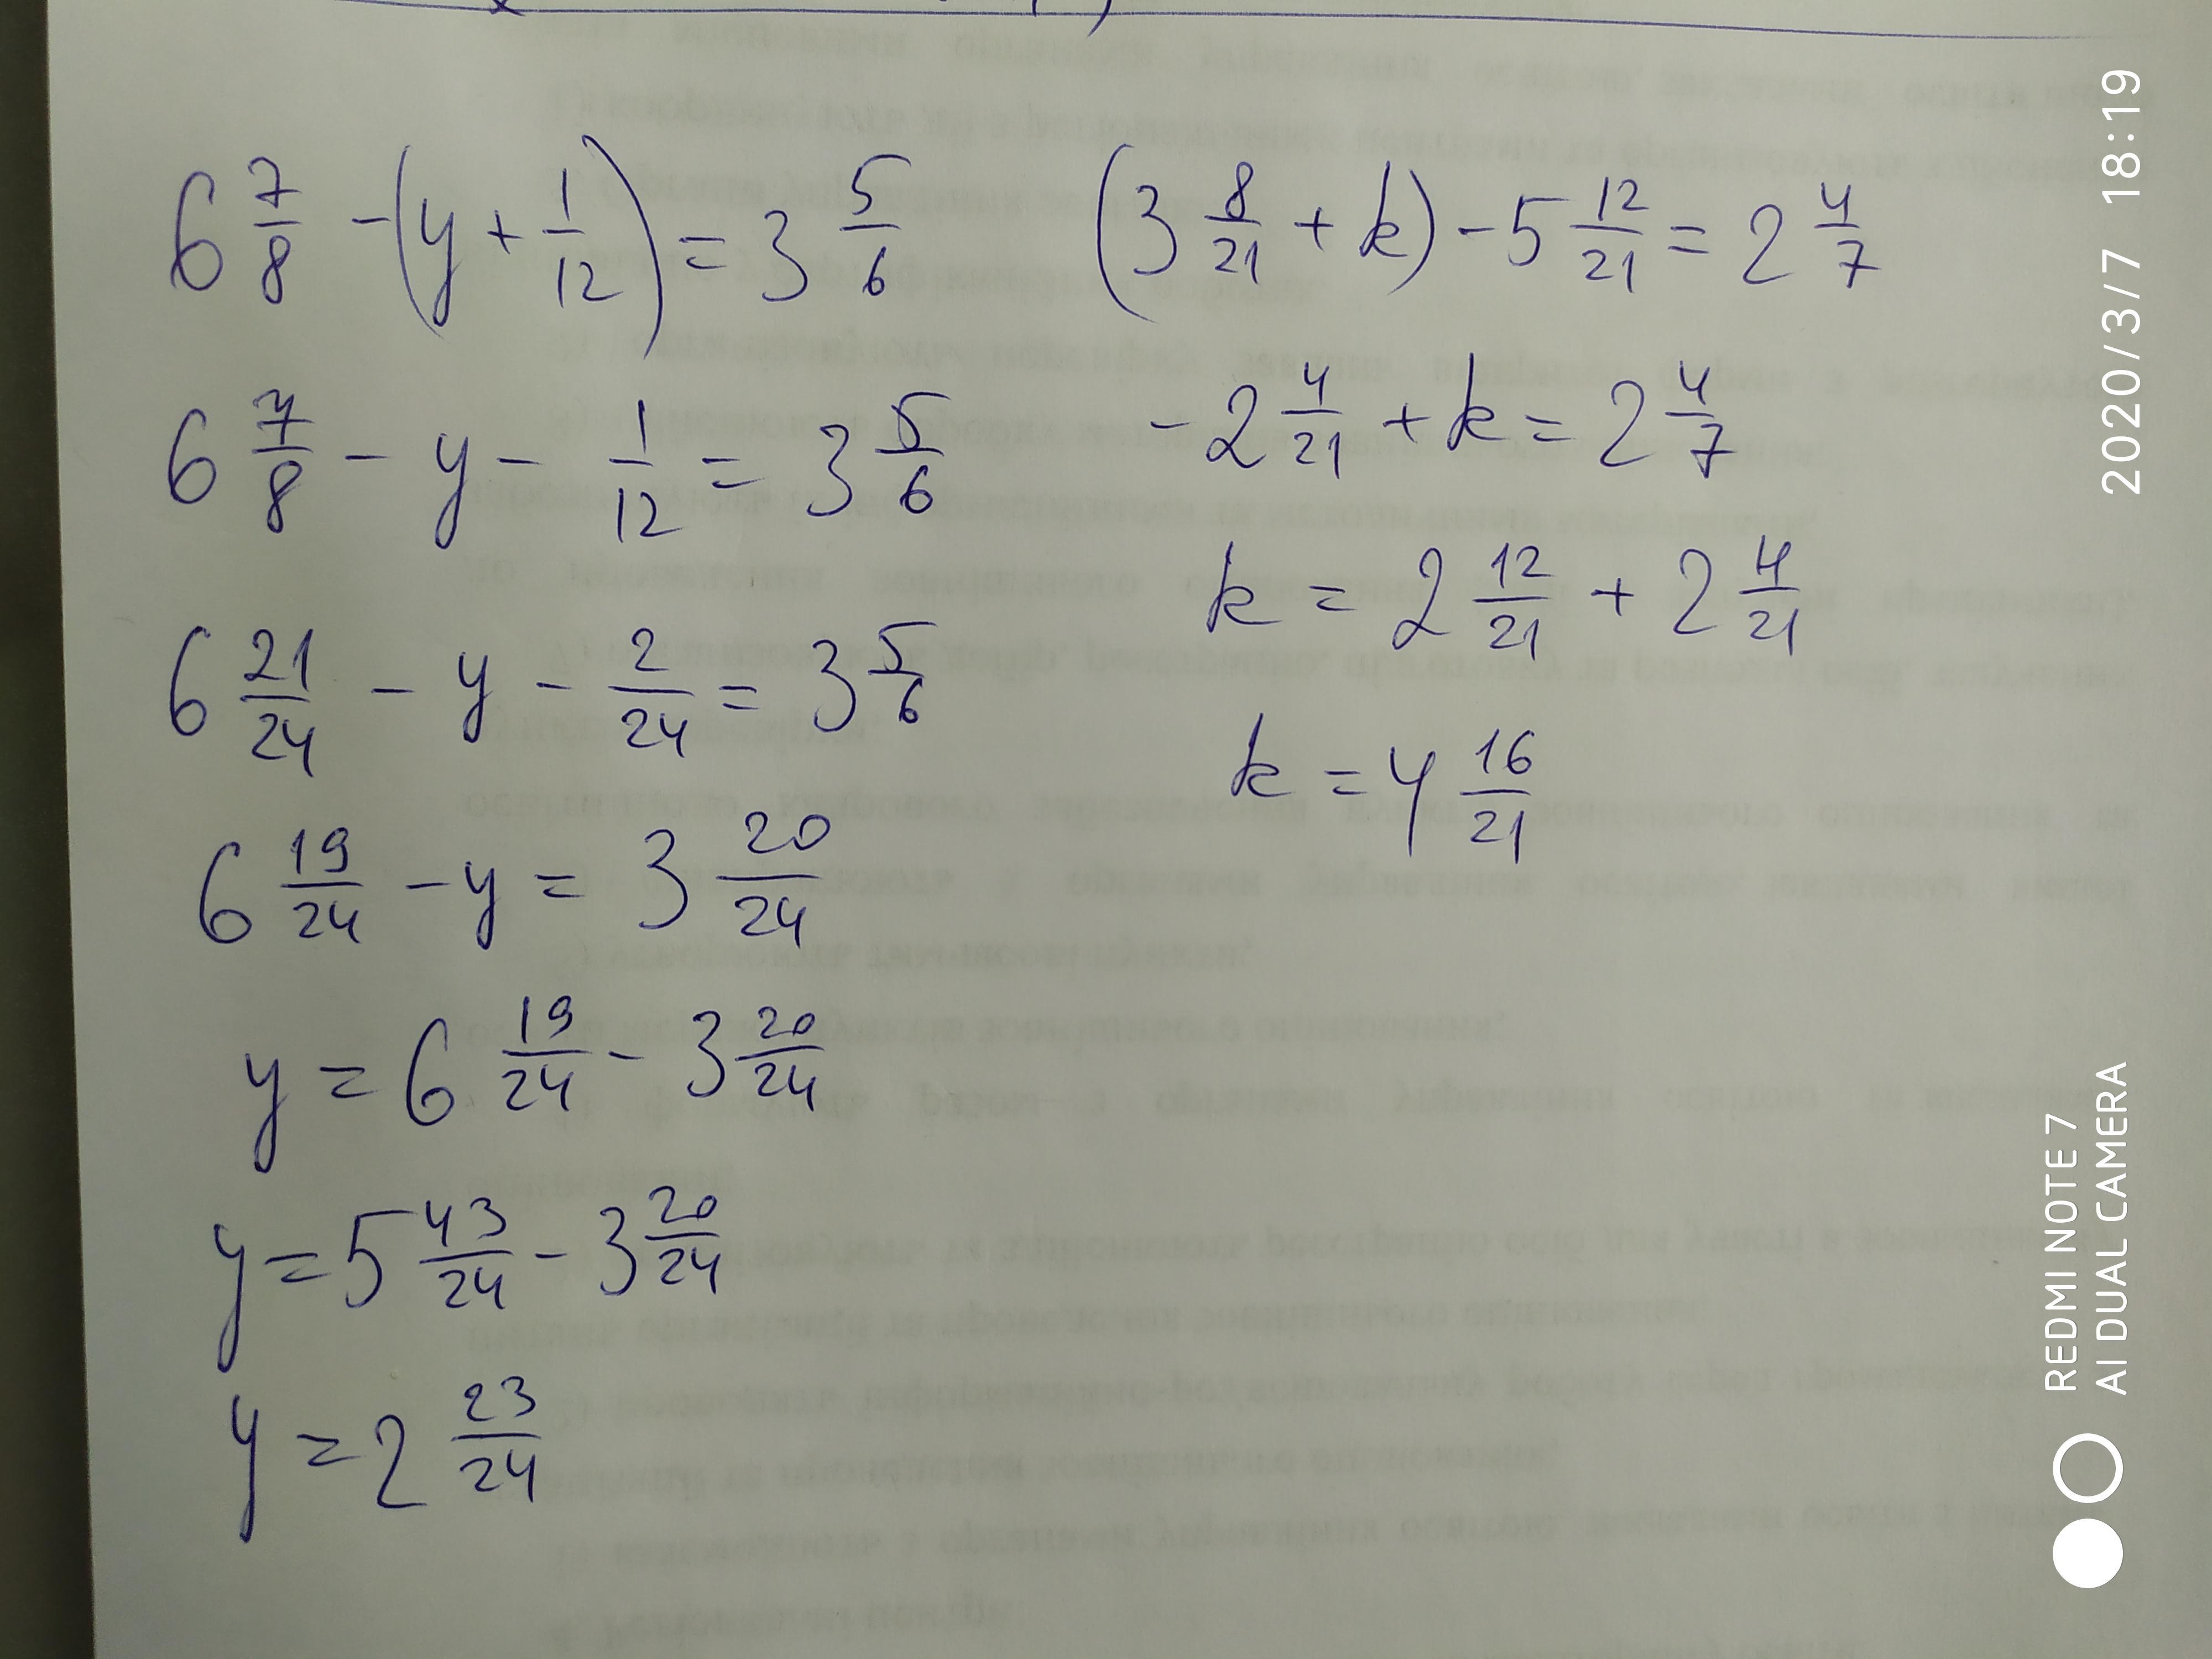 Решить уравнения 8 24